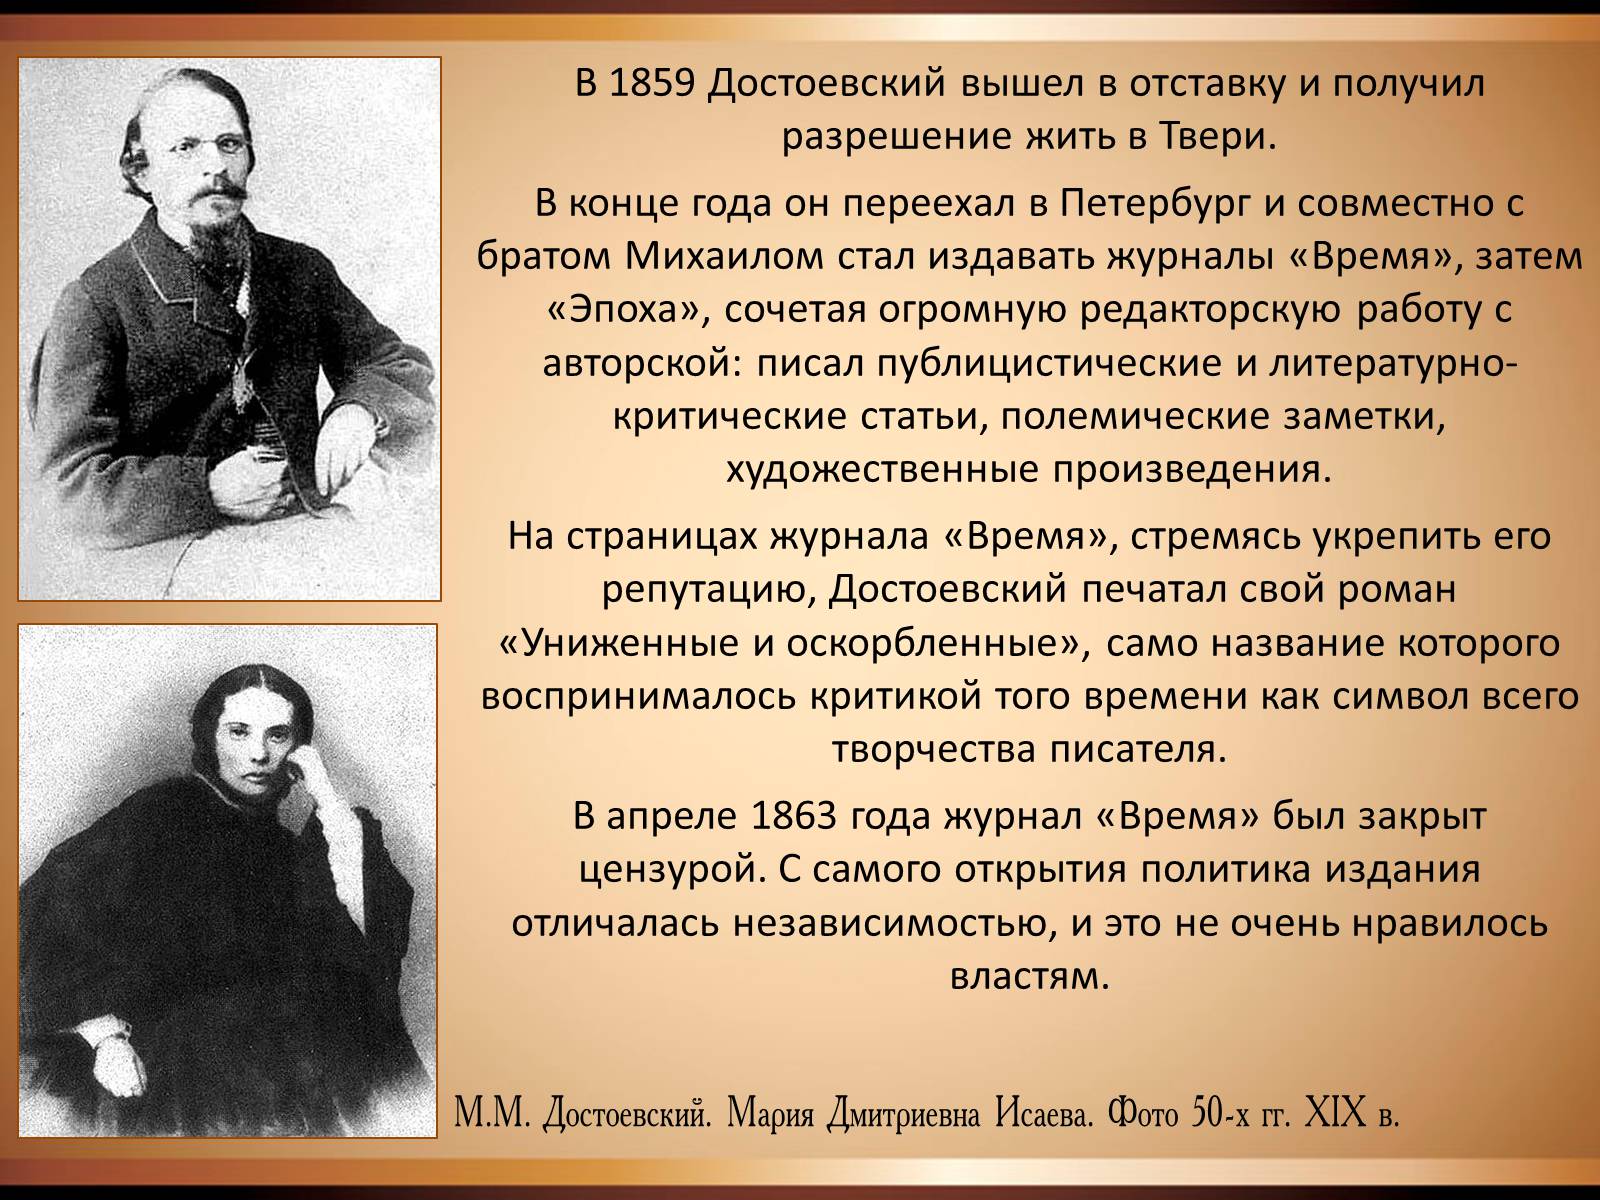 Краткая характеристика достоевского. Достоевский 1859 год.